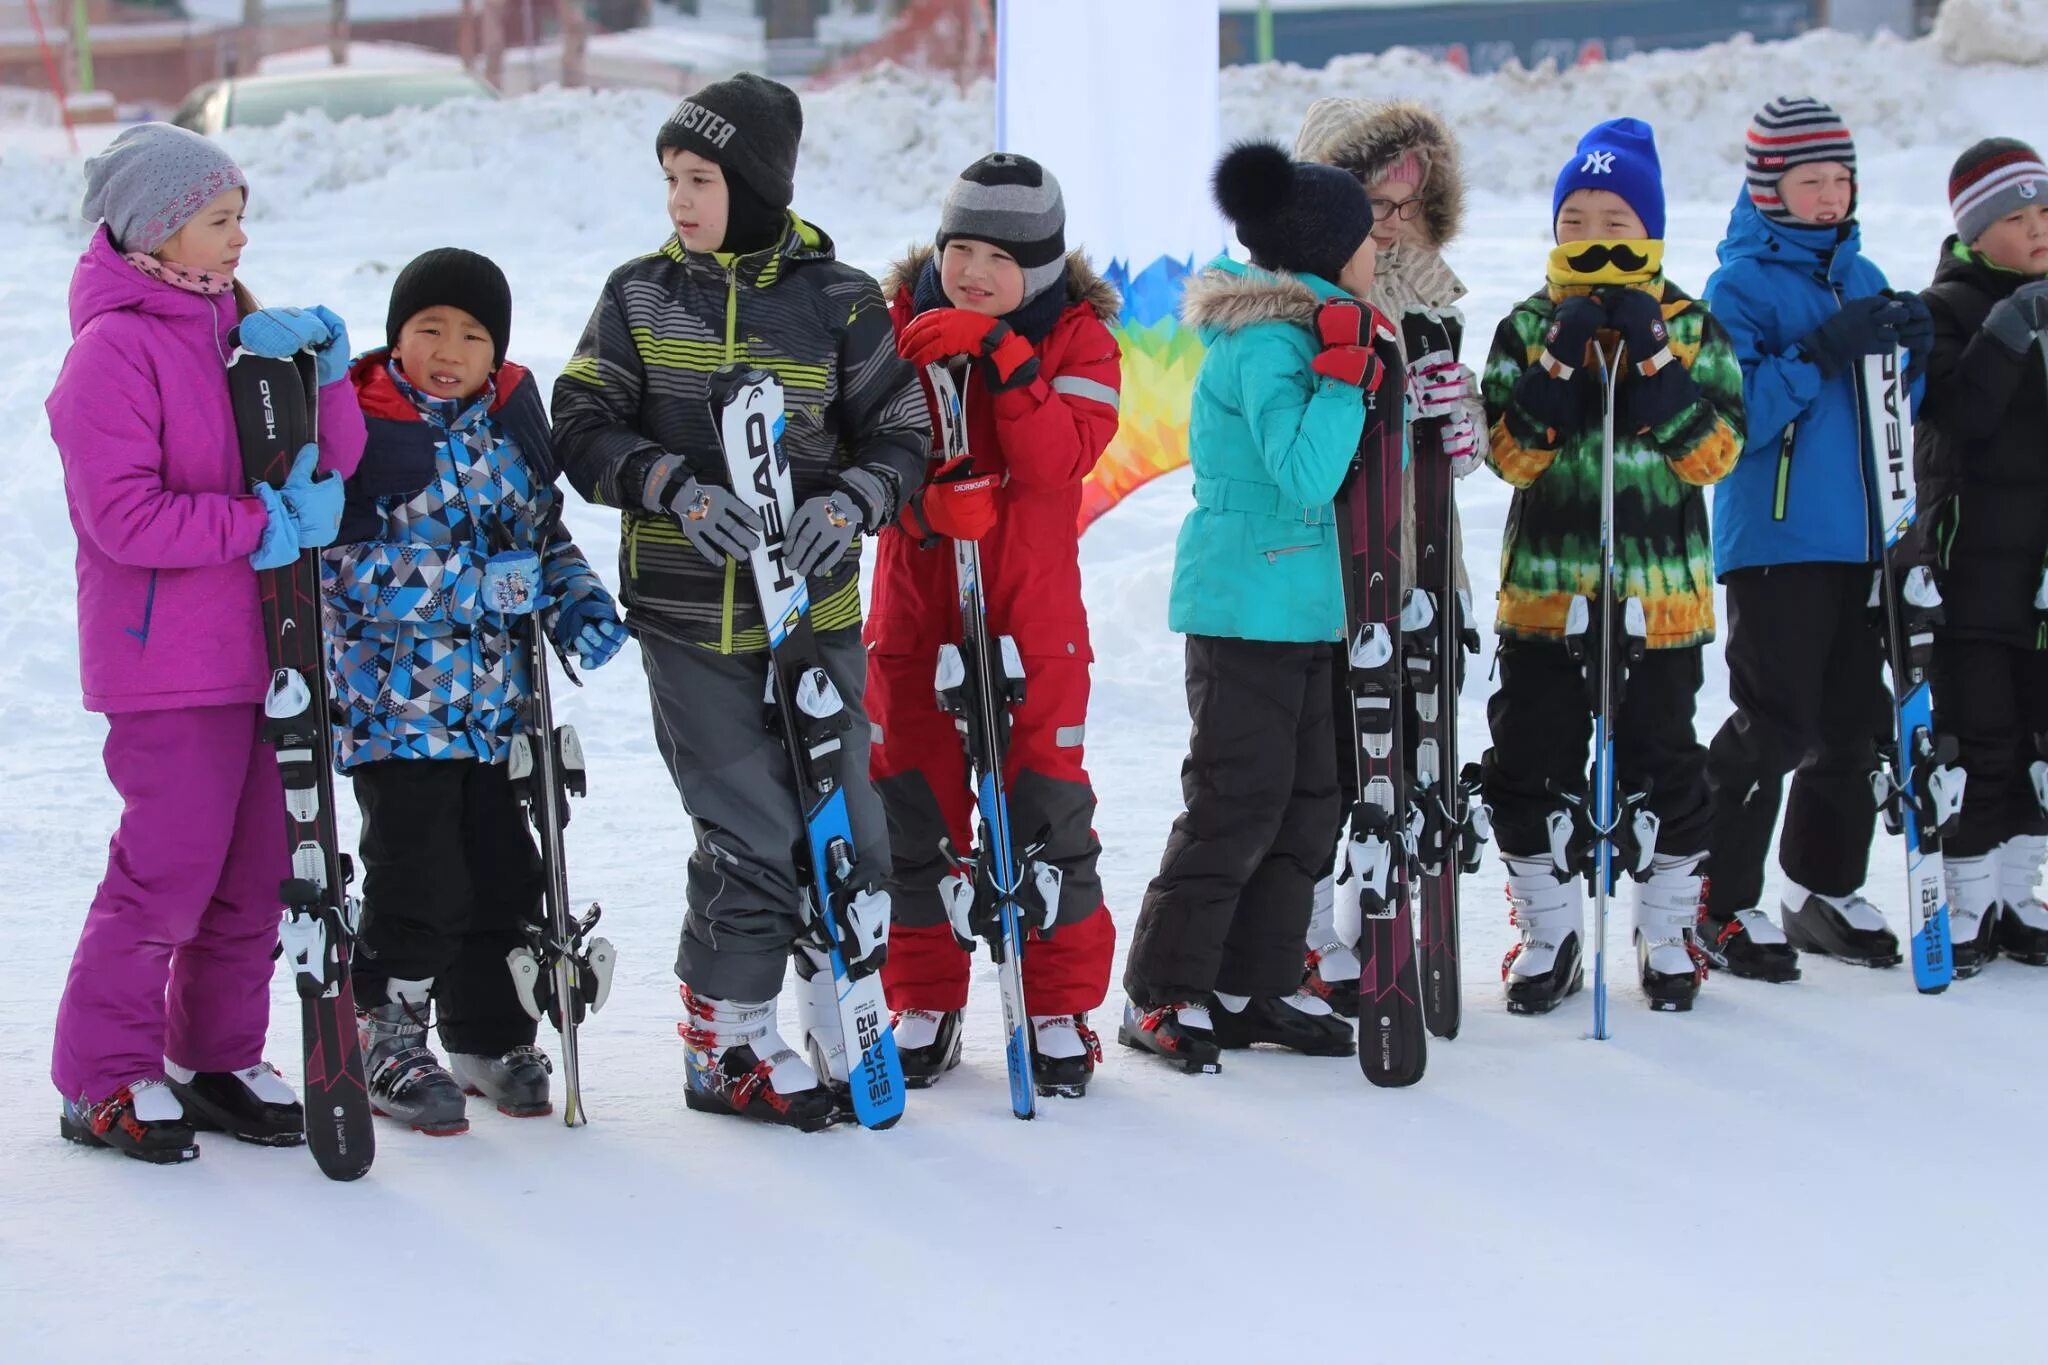 Лыжи ребенку в школу. Лыжи в школе. Школьники на лыжах. Лыжи для начальной школы. Дети на лыжах в школе.